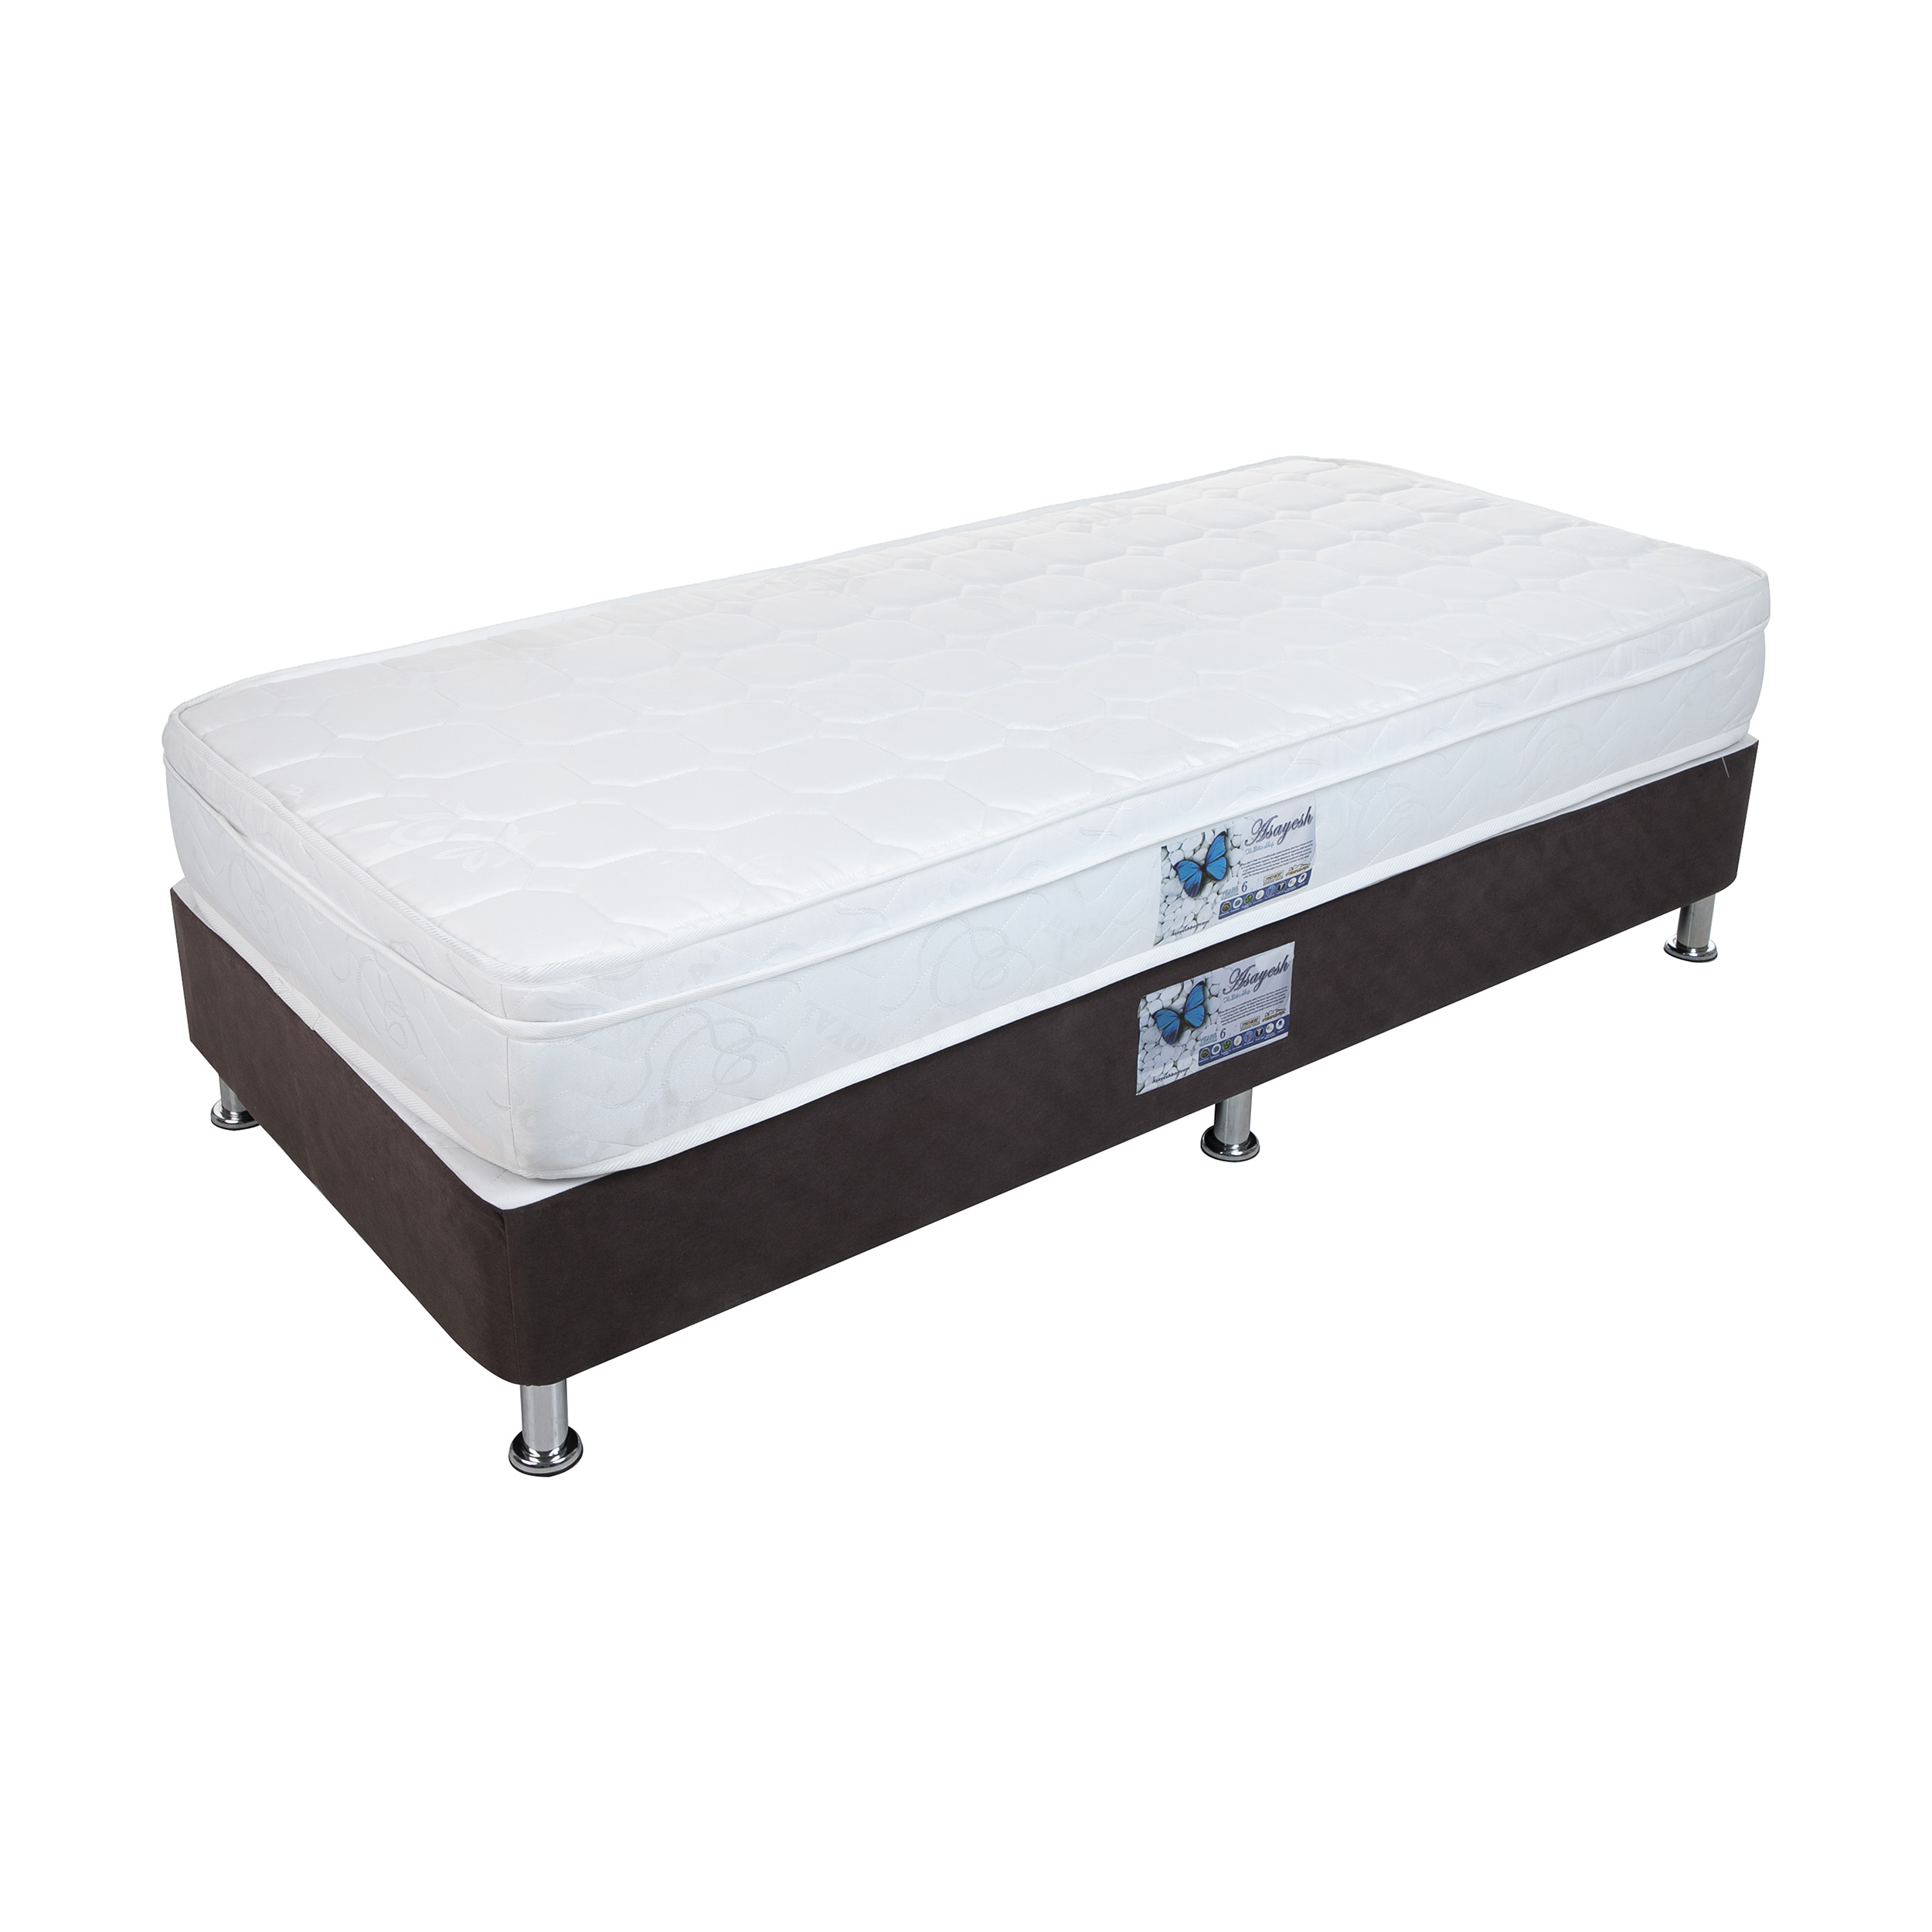 تخت خواب یک نفره آسایش باکس مدل AKA151 به همراه تشک طبی فنری سایز 200 × 120 سانتی متر